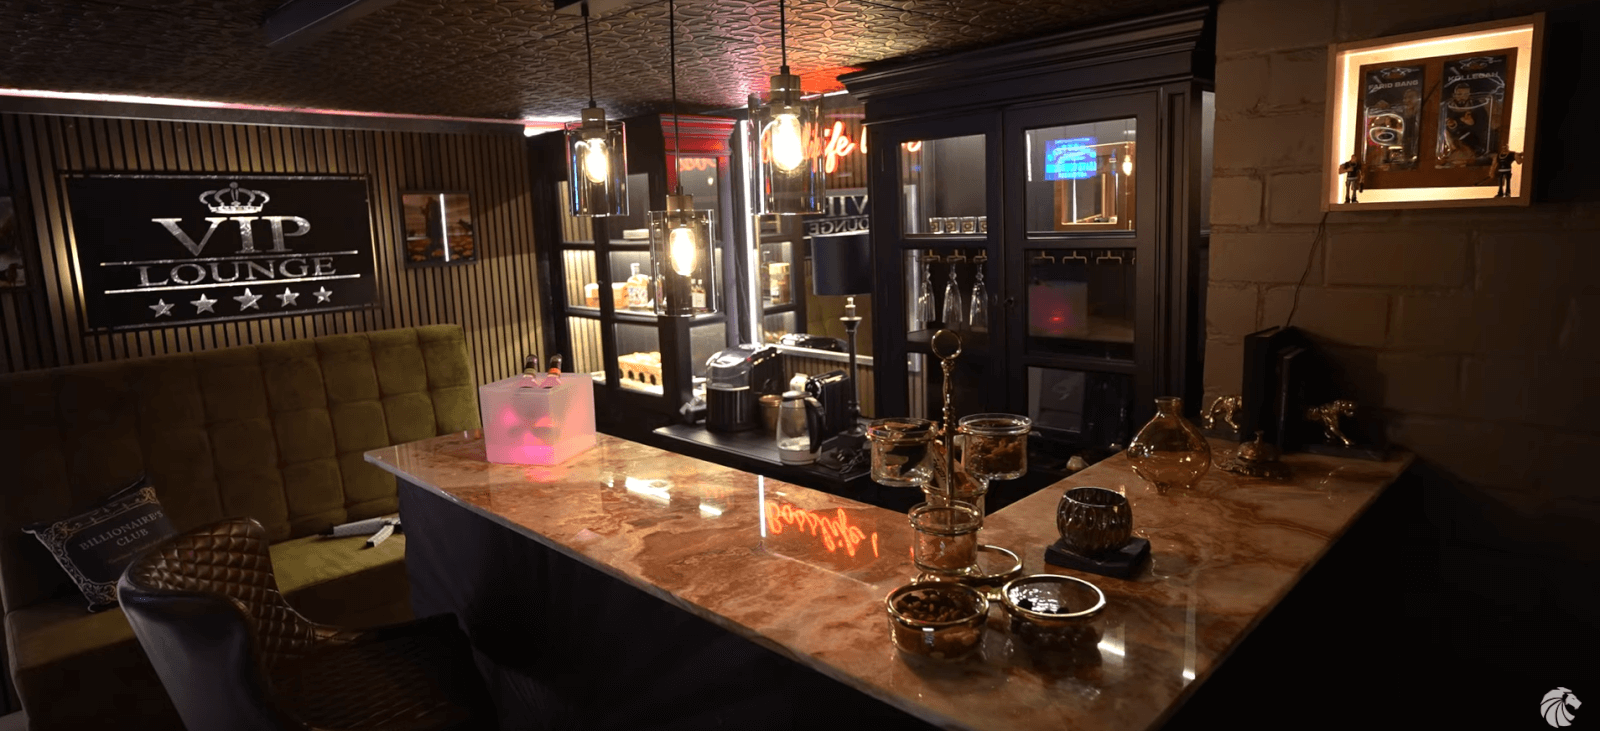 Kollegah zeigt seine Bar-Lounge